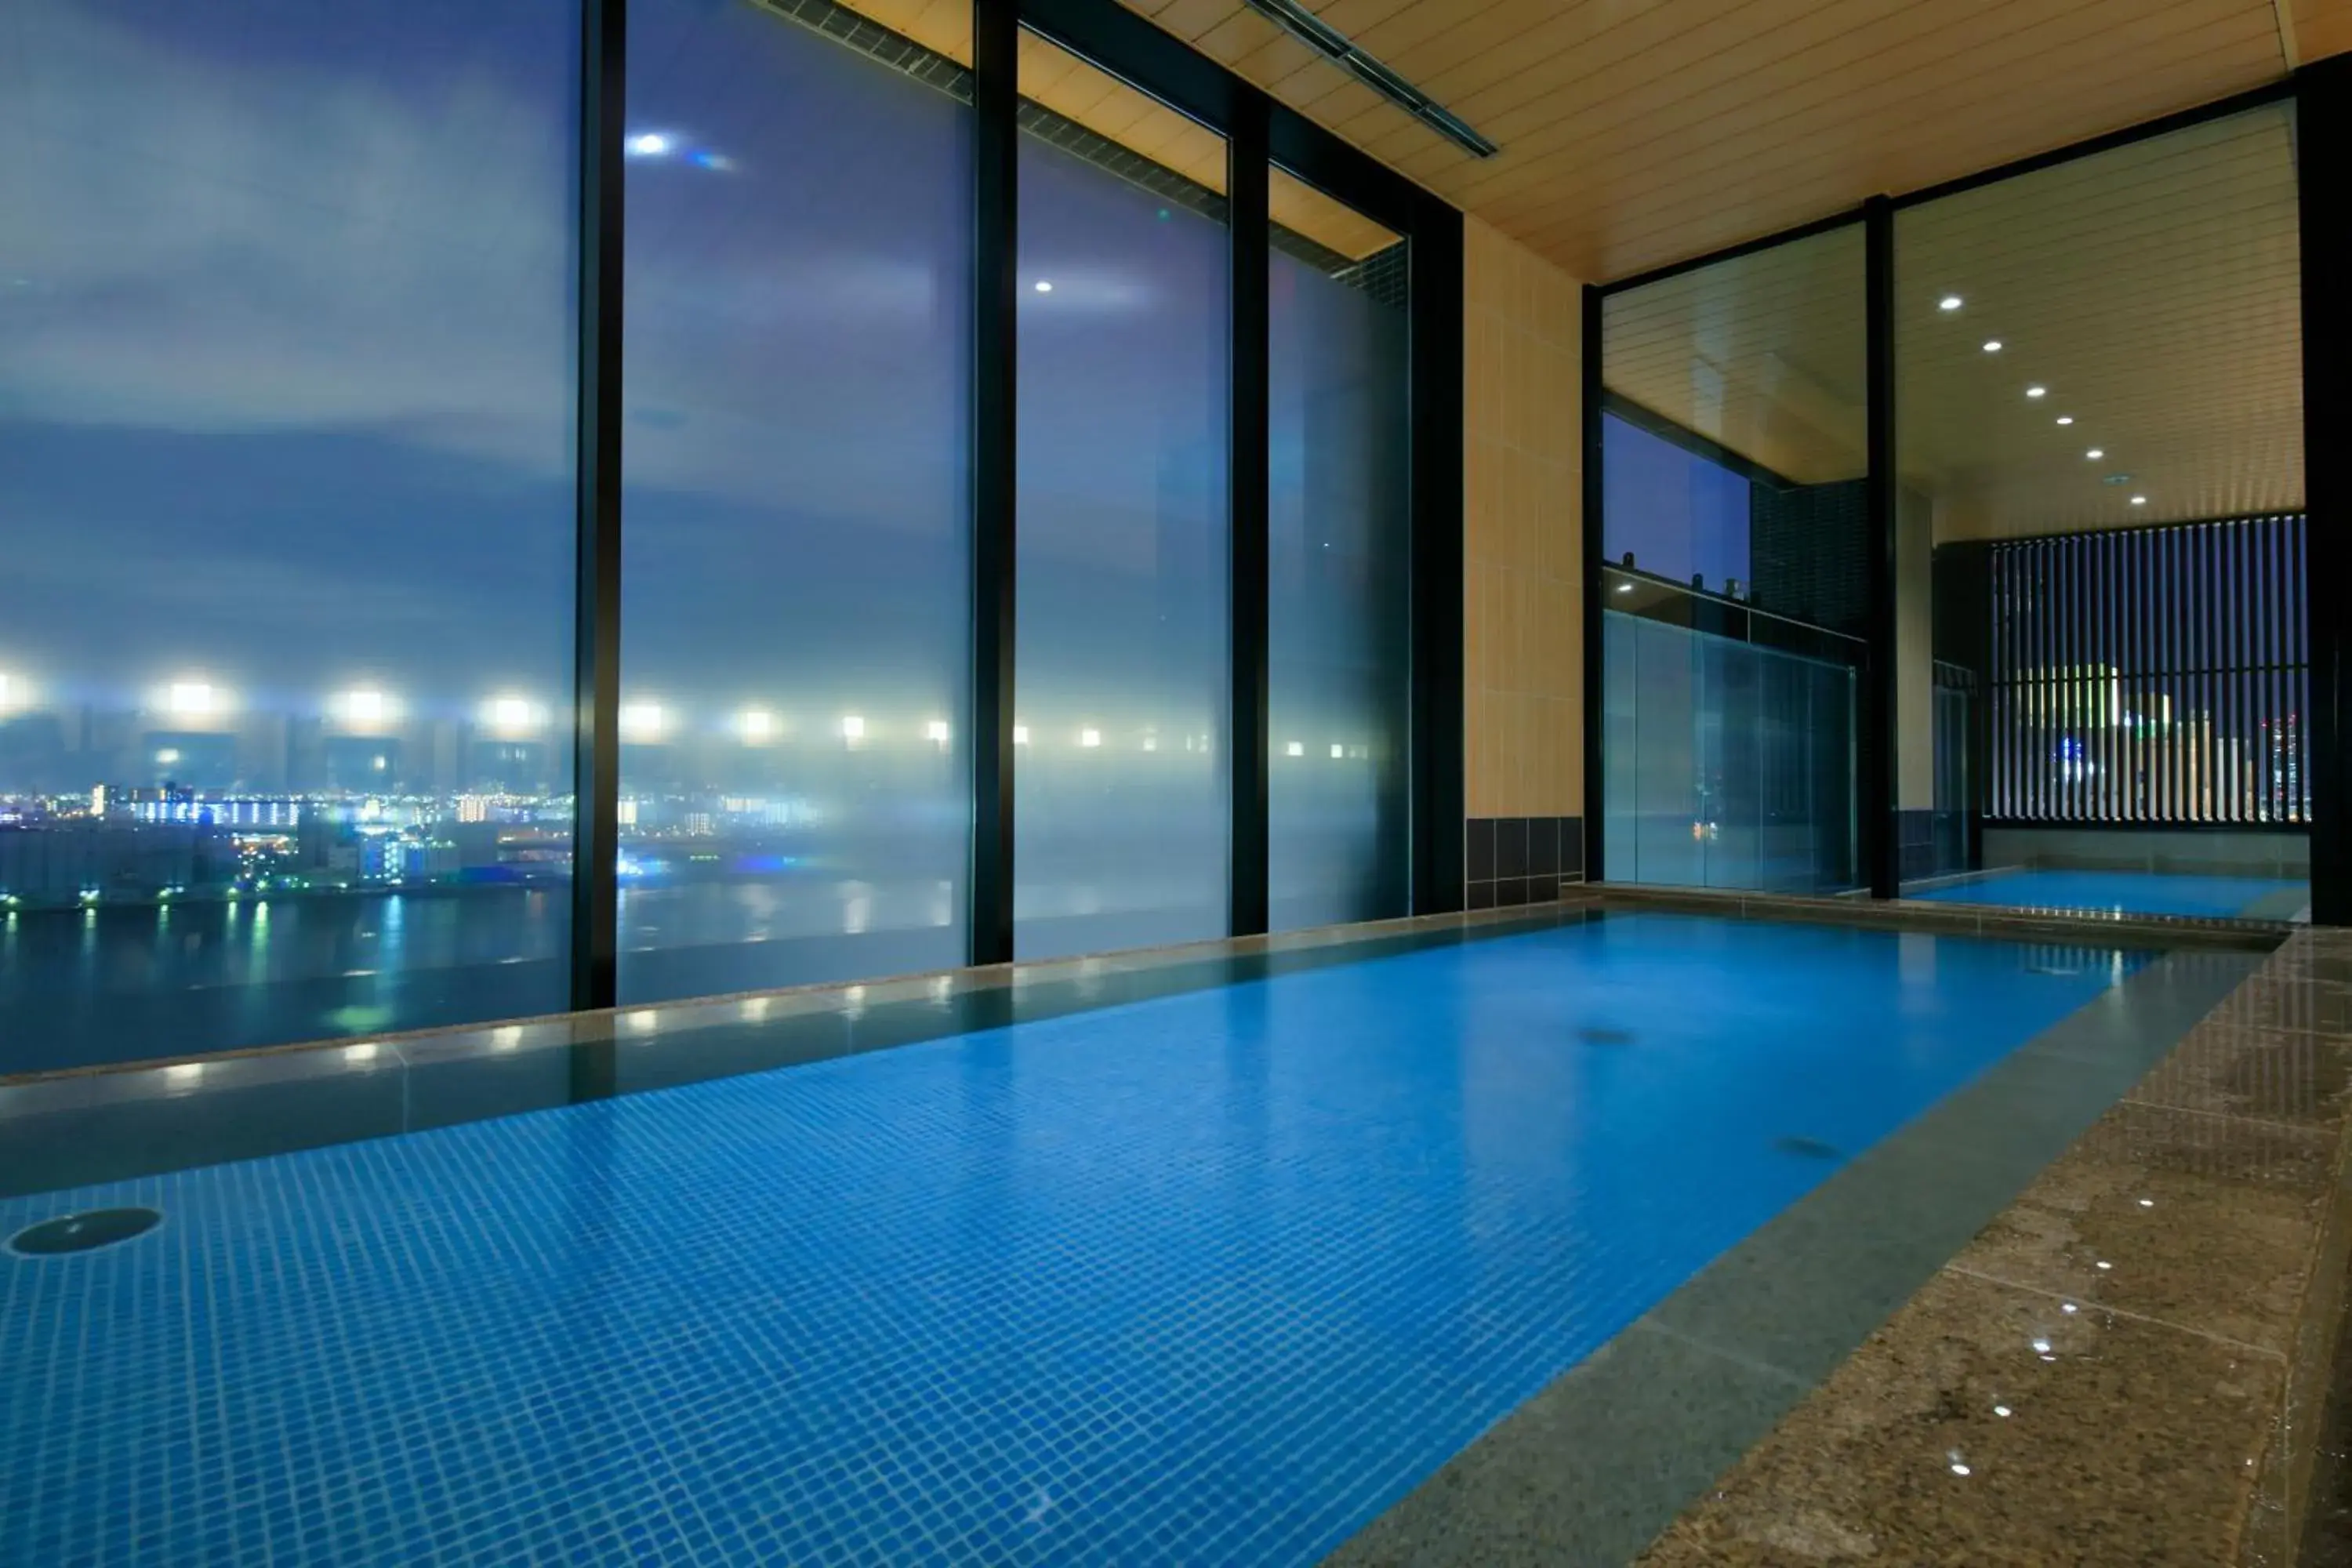 Public Bath, Swimming Pool in The Singulari Hotel & Skyspa at Universal Studios Japan